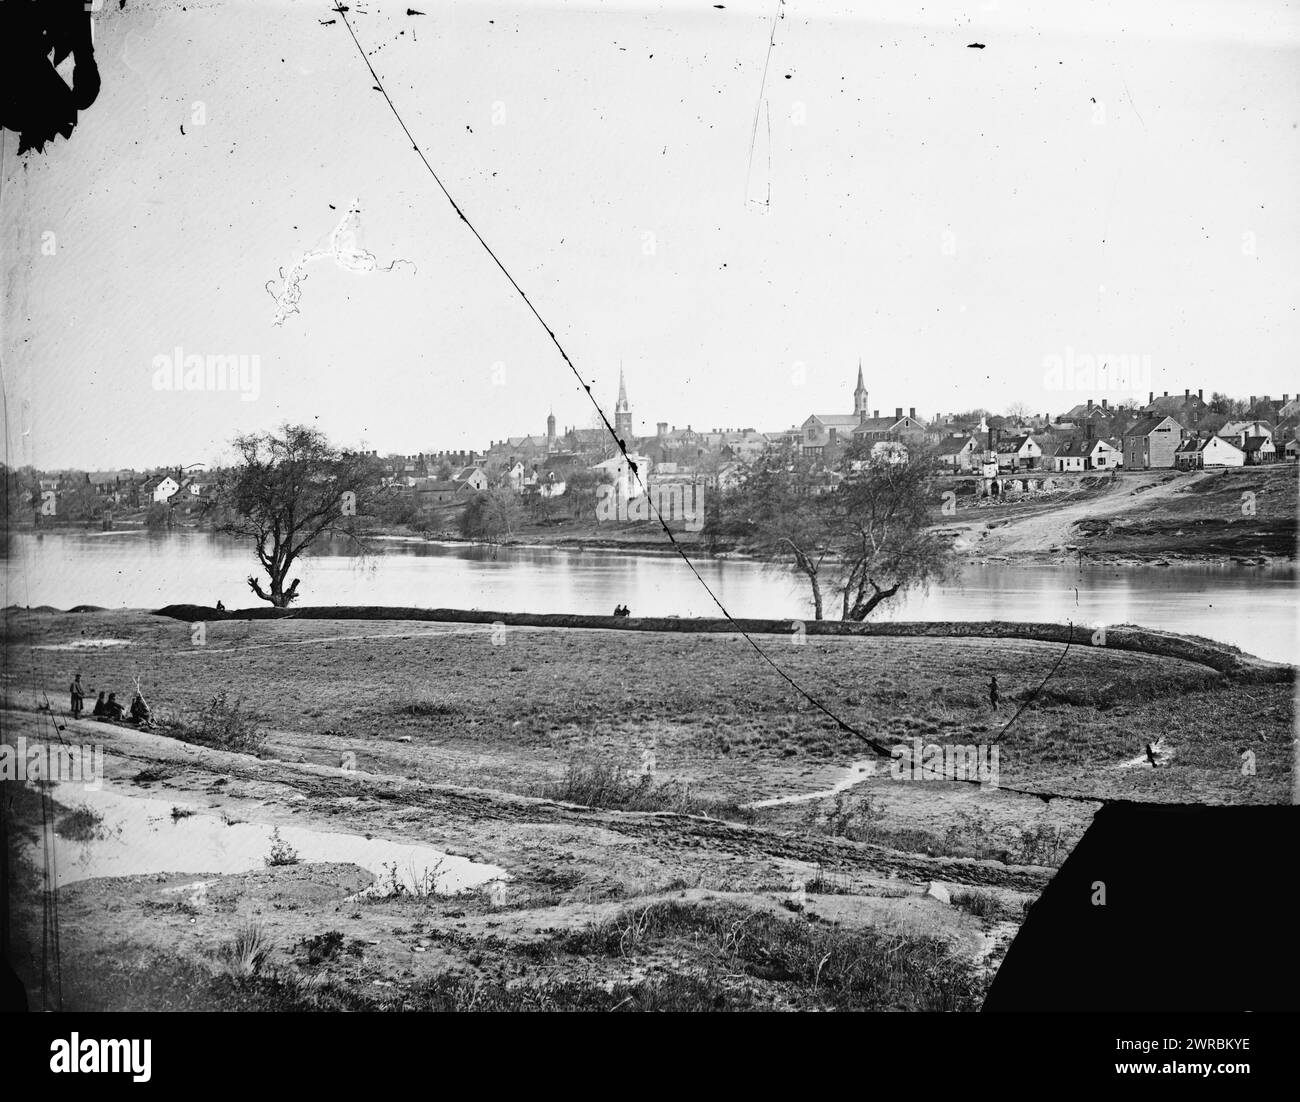 View of Lower End of Fredericksburg, ..., févr. 1863., États-Unis, histoire, guerre civile, 1861-1865, négatifs en verre, 1860-1870, 1 négatif : verre, collodion humide Banque D'Images